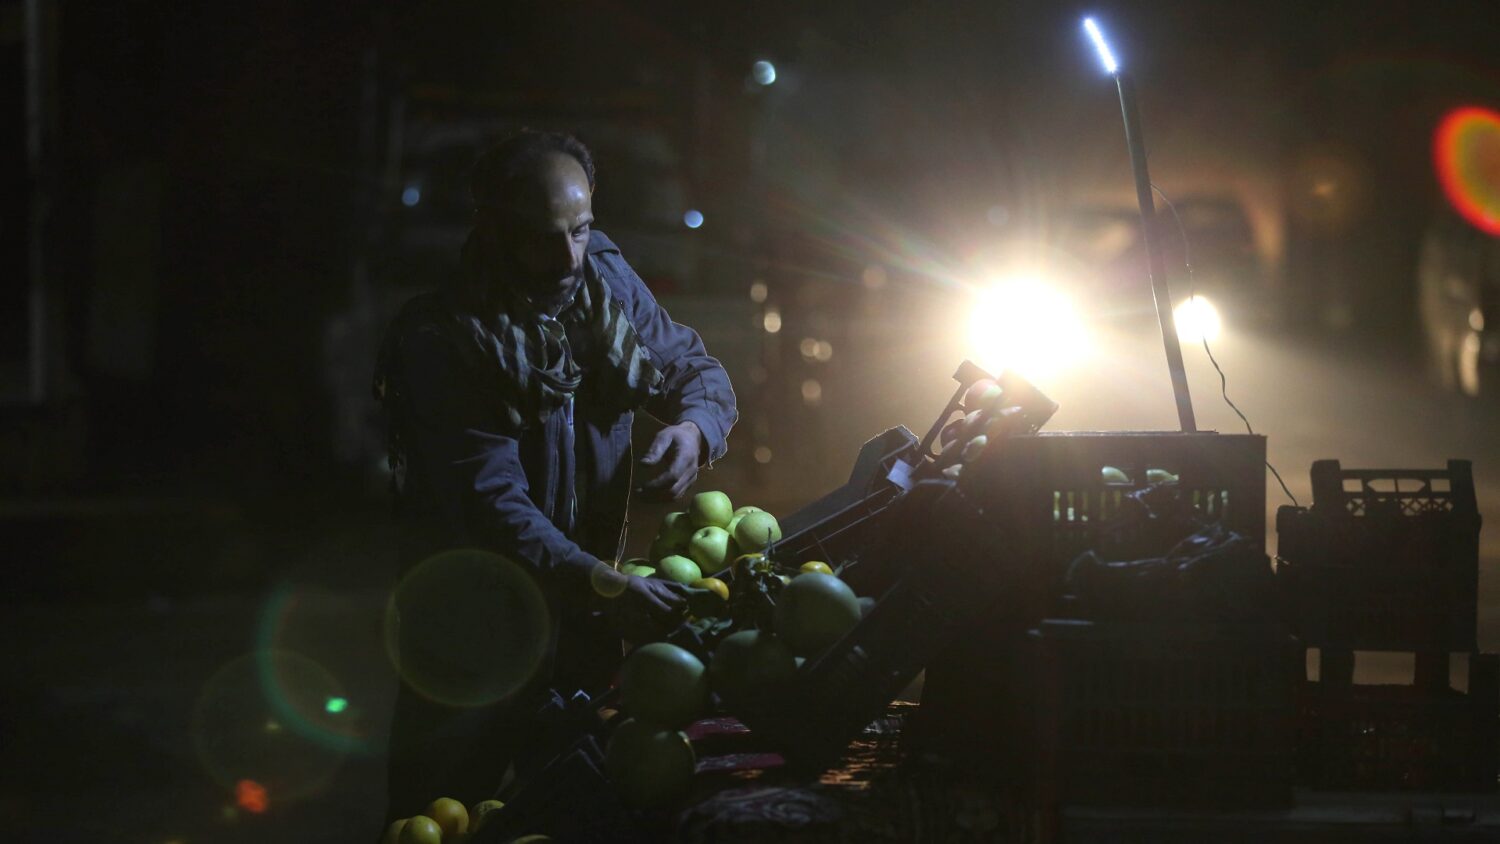 بائع سوري يرتب التفاح في كشك لبيع الفاكهة وسط انقطاع مستمر في الكهرباء - إنترنت